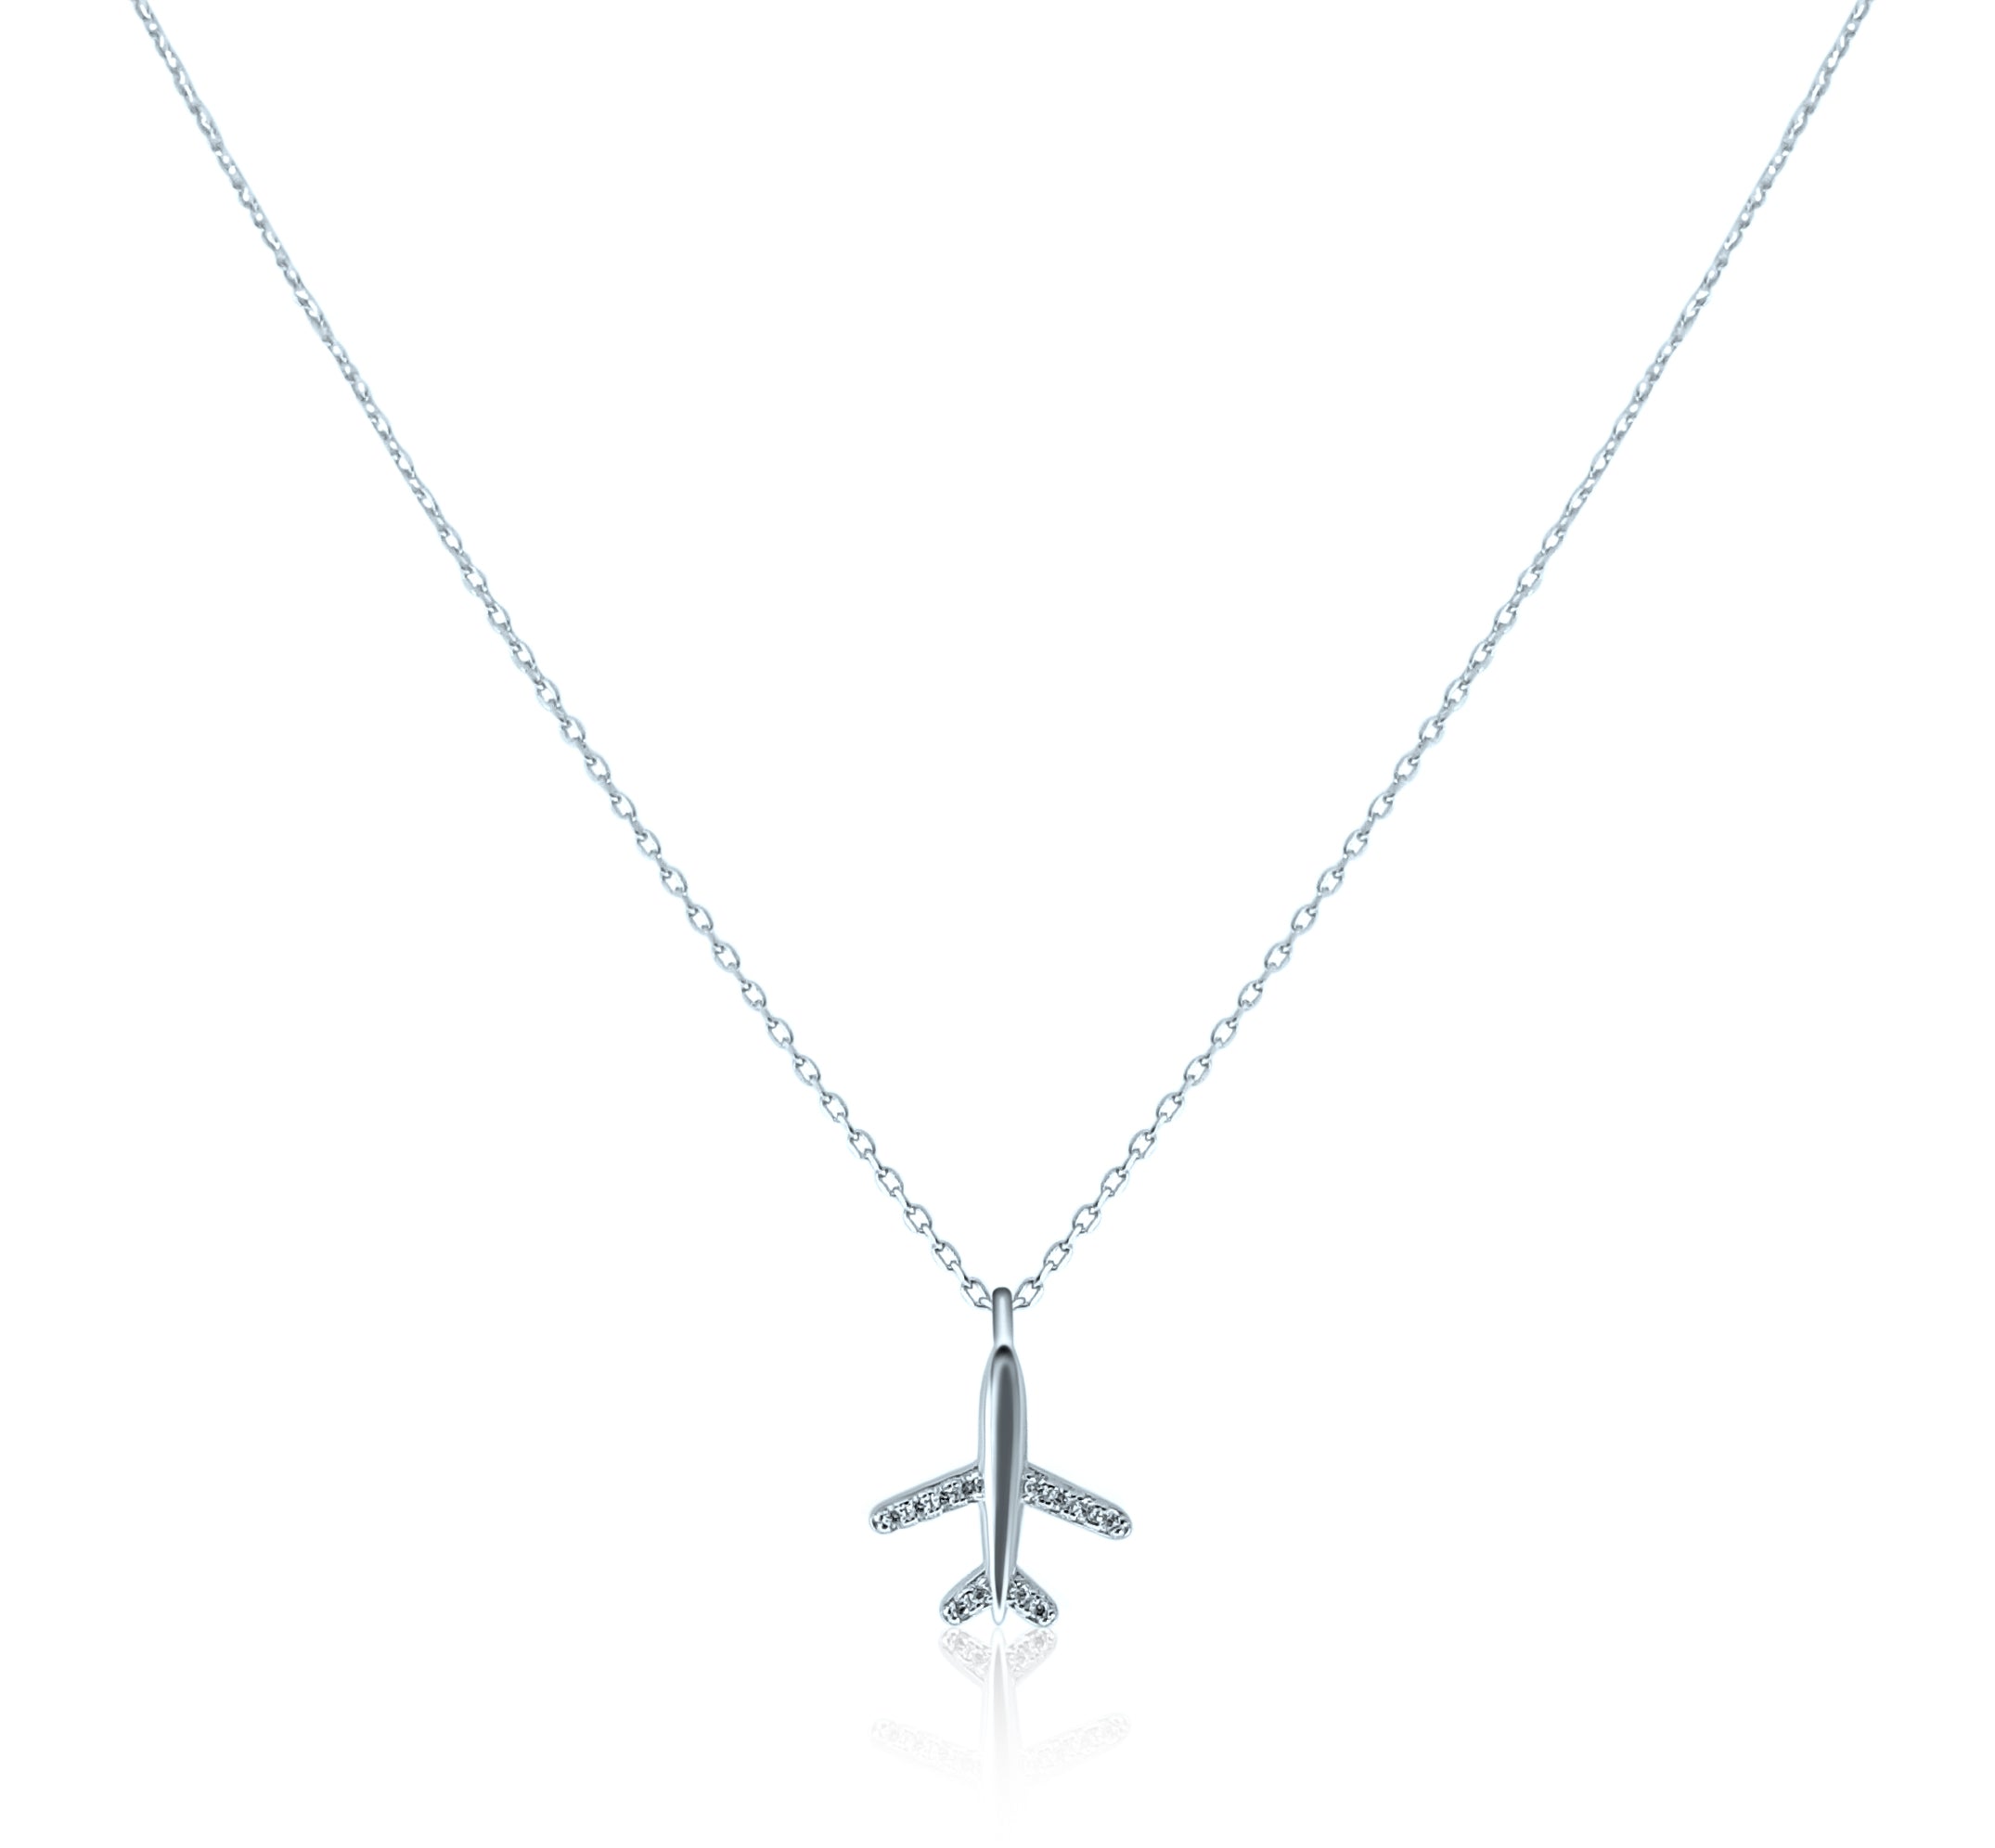 Plane Necklace – shop on Pinterest